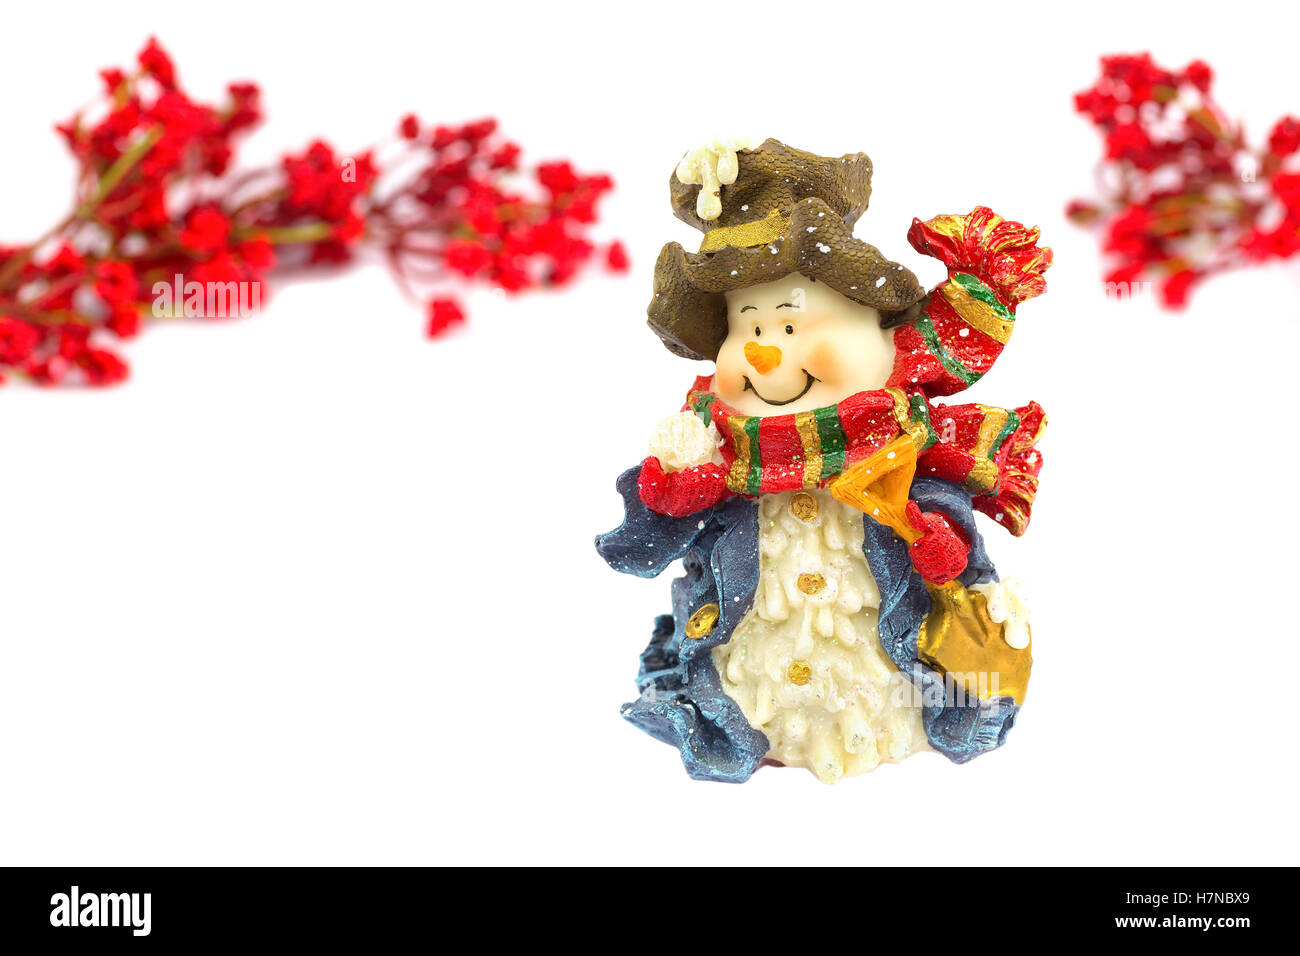 Niedlichen Schneemann Figur mit roten Beeren, die isoliert auf weißem Hintergrund Stockfoto